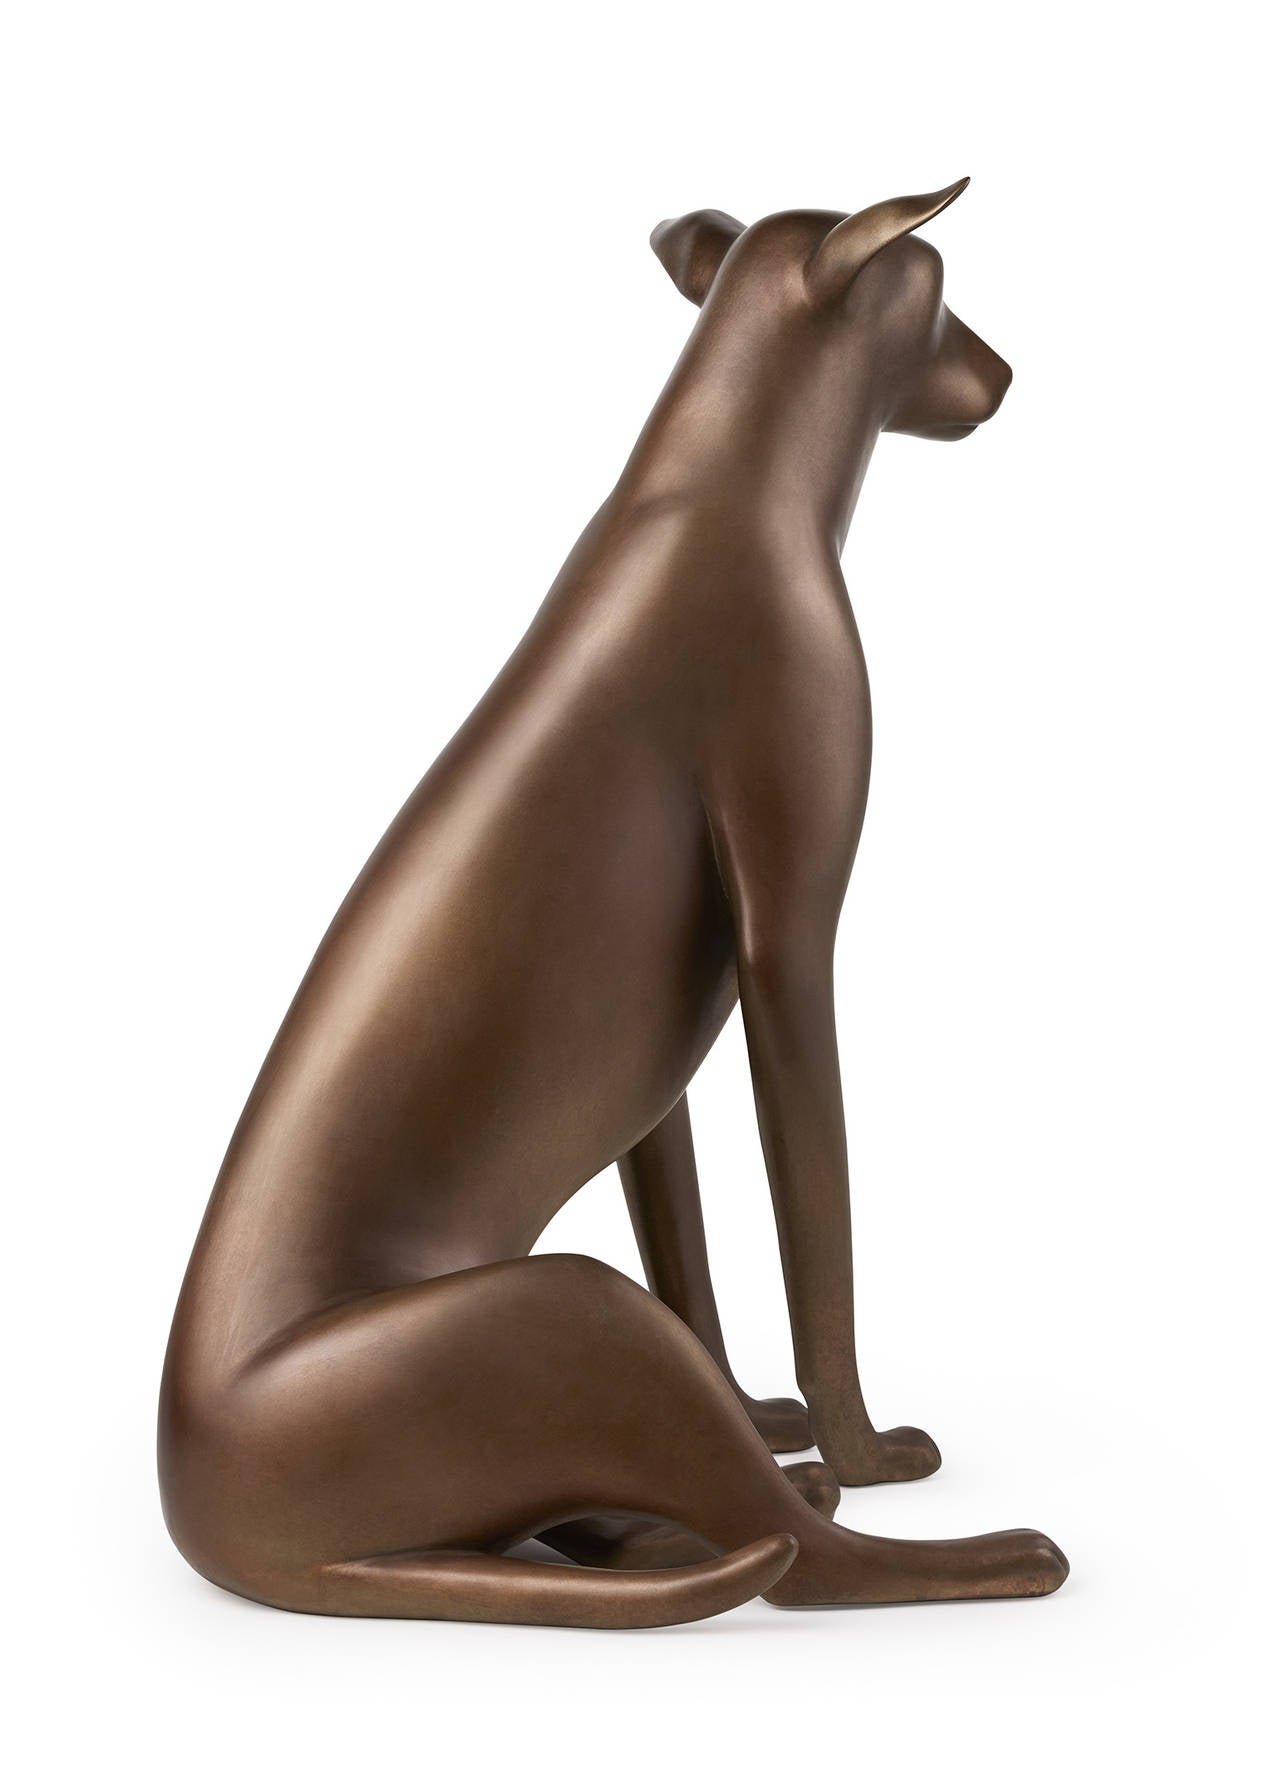 Gwynn Murrill Figurative Sculpture - Sitting Koa